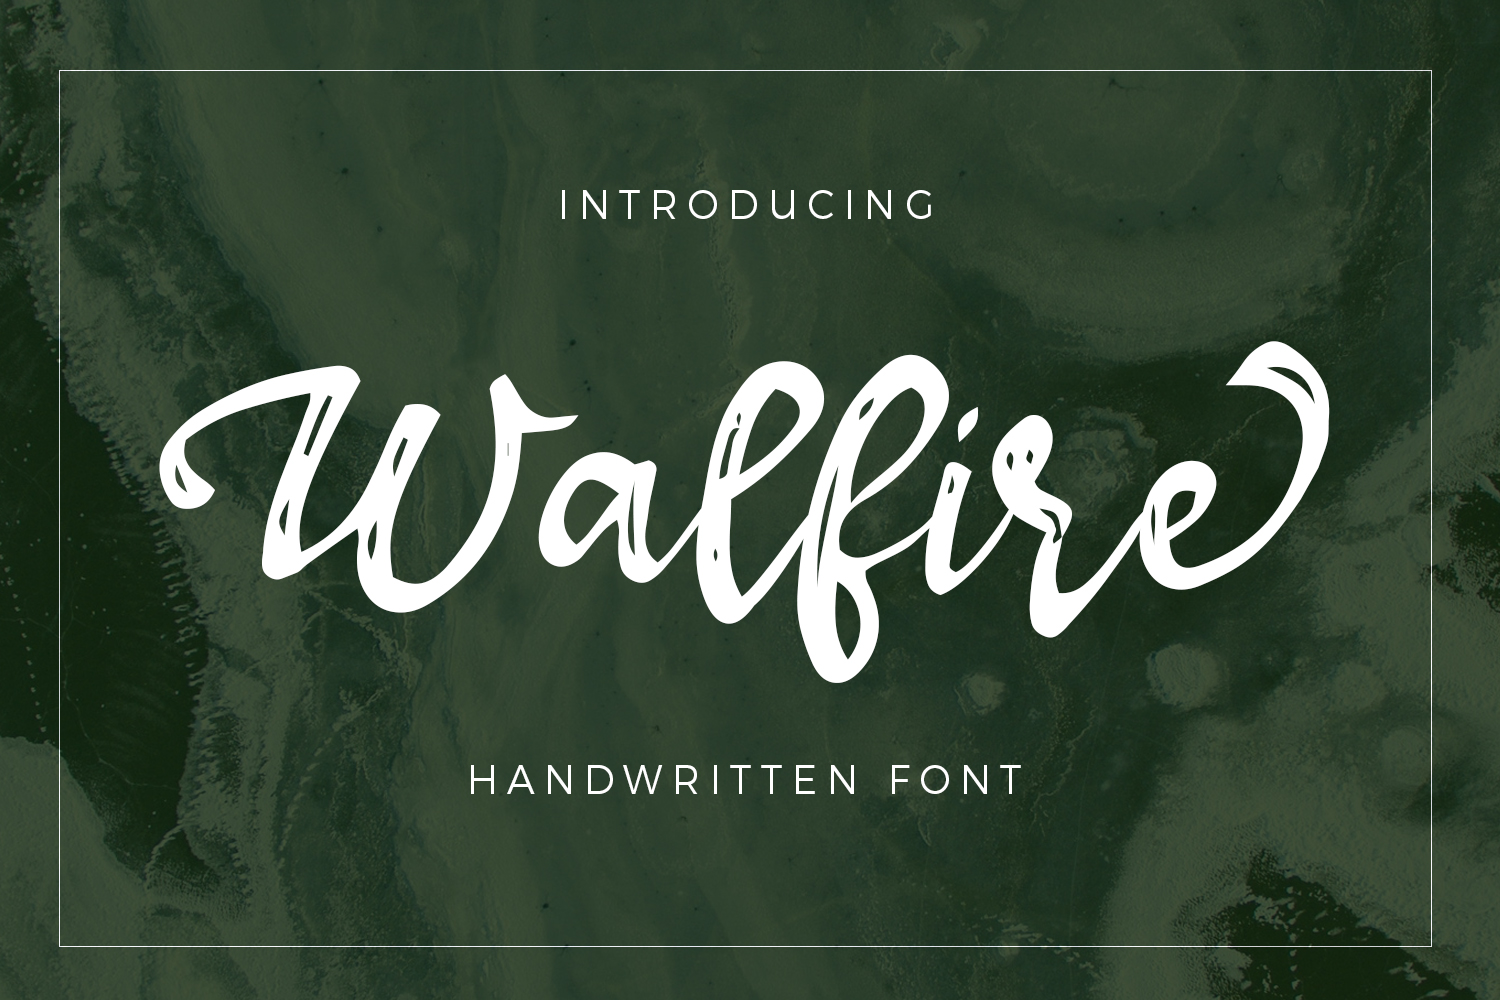 Walfire Font